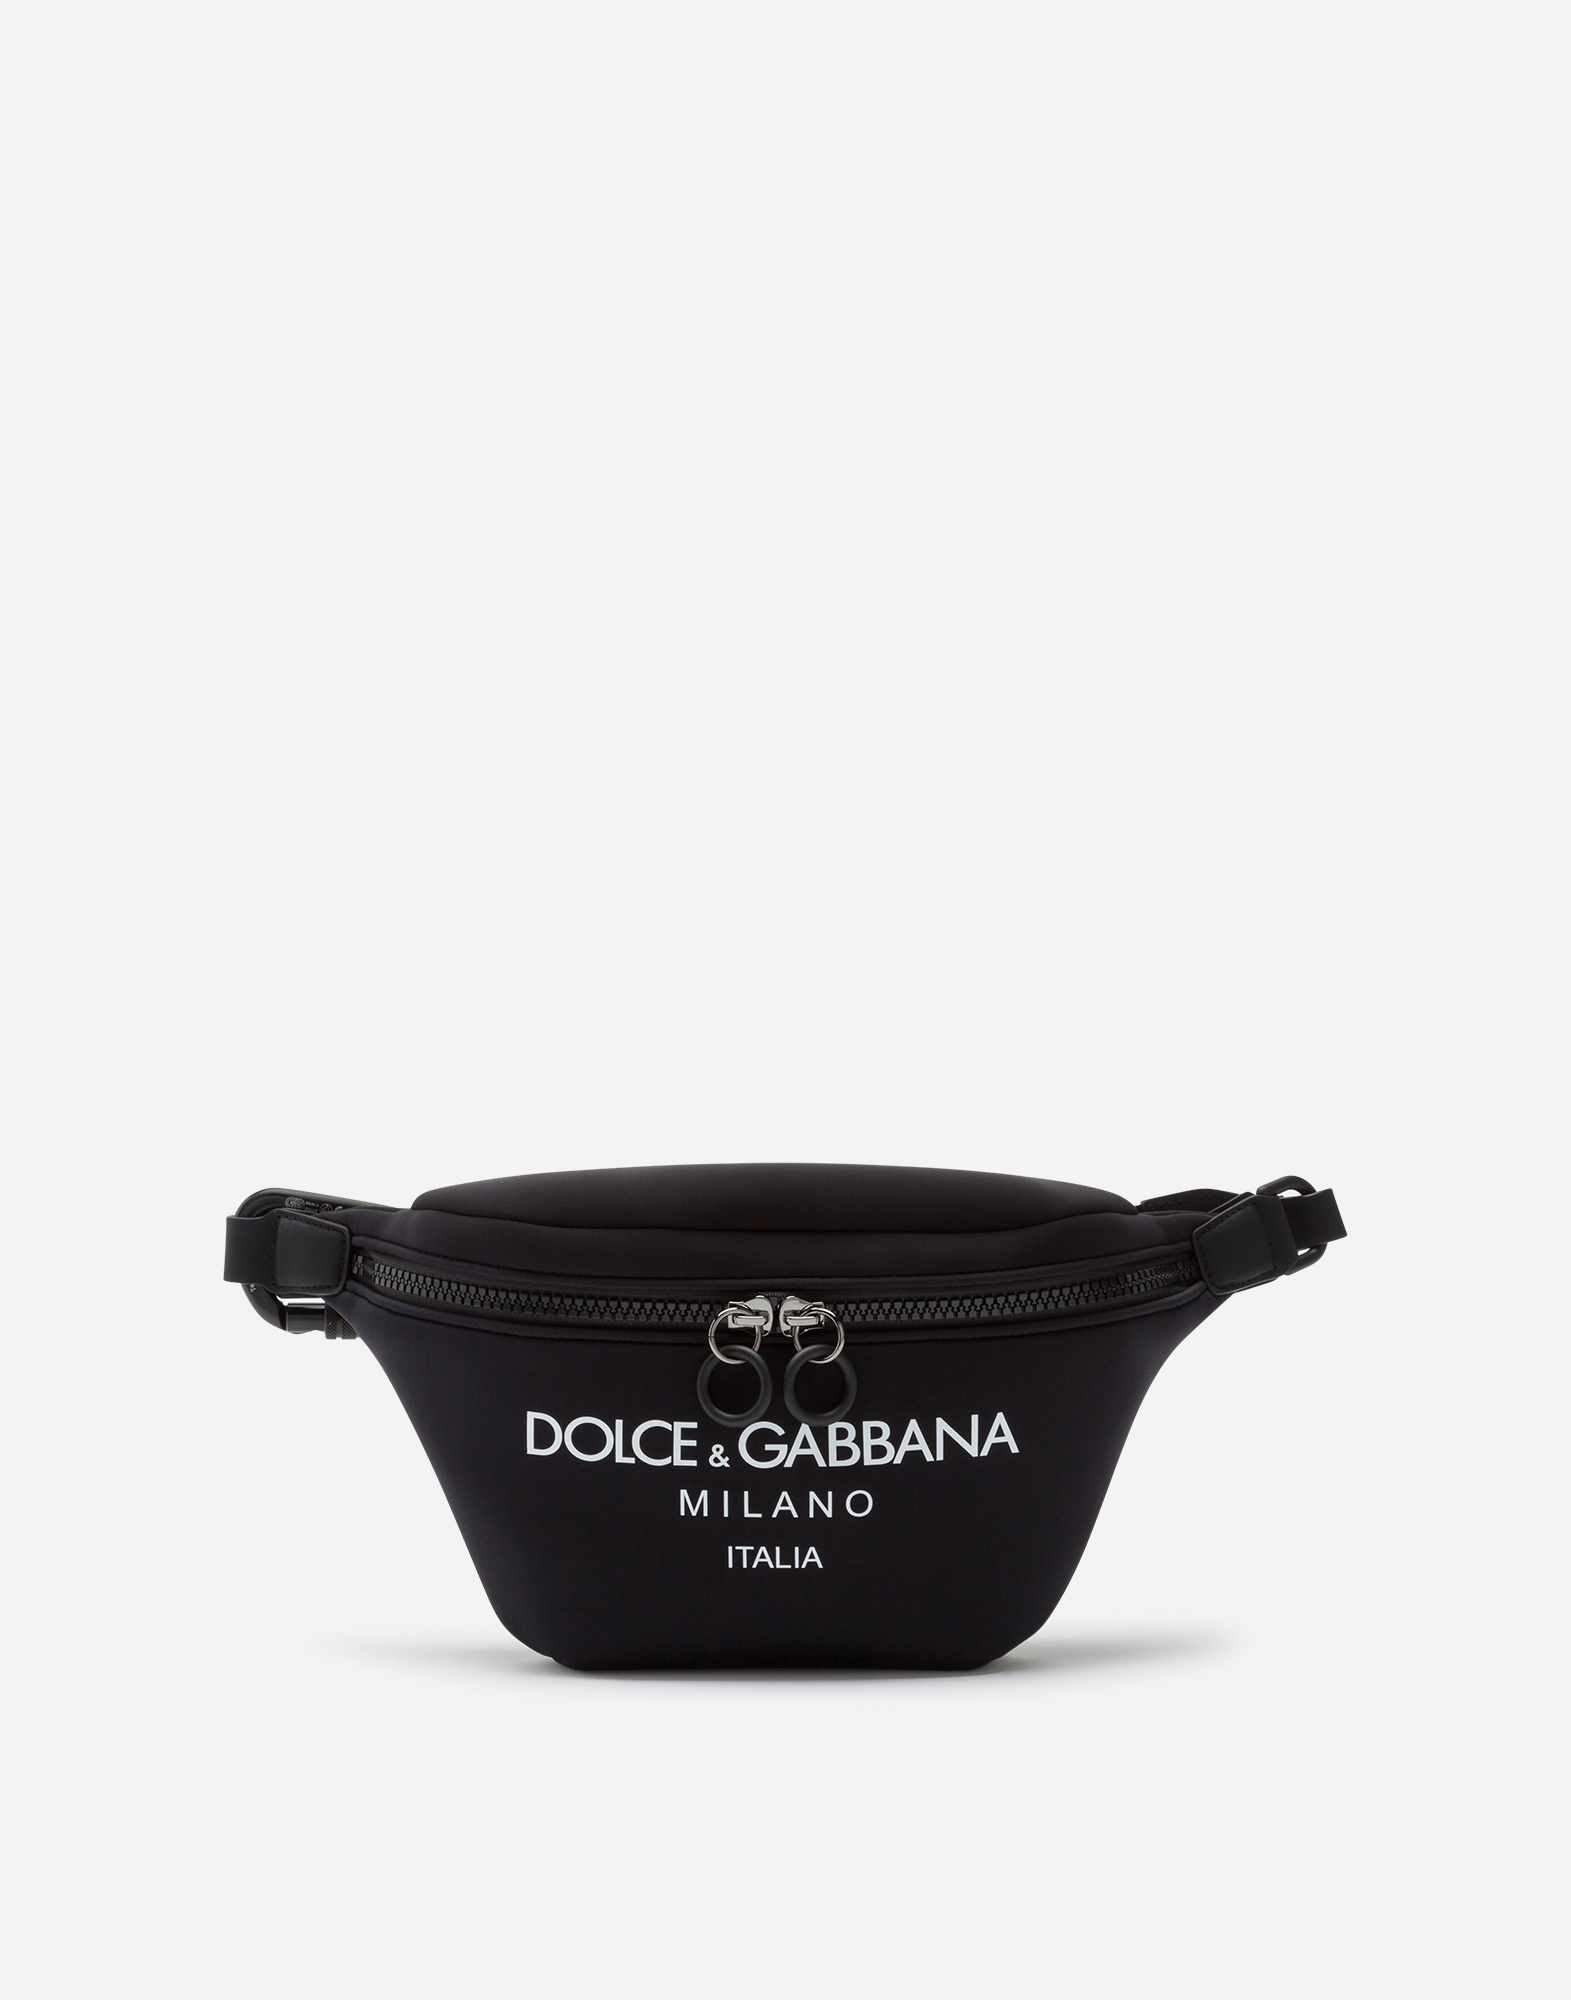 dolce and gabbana man bag